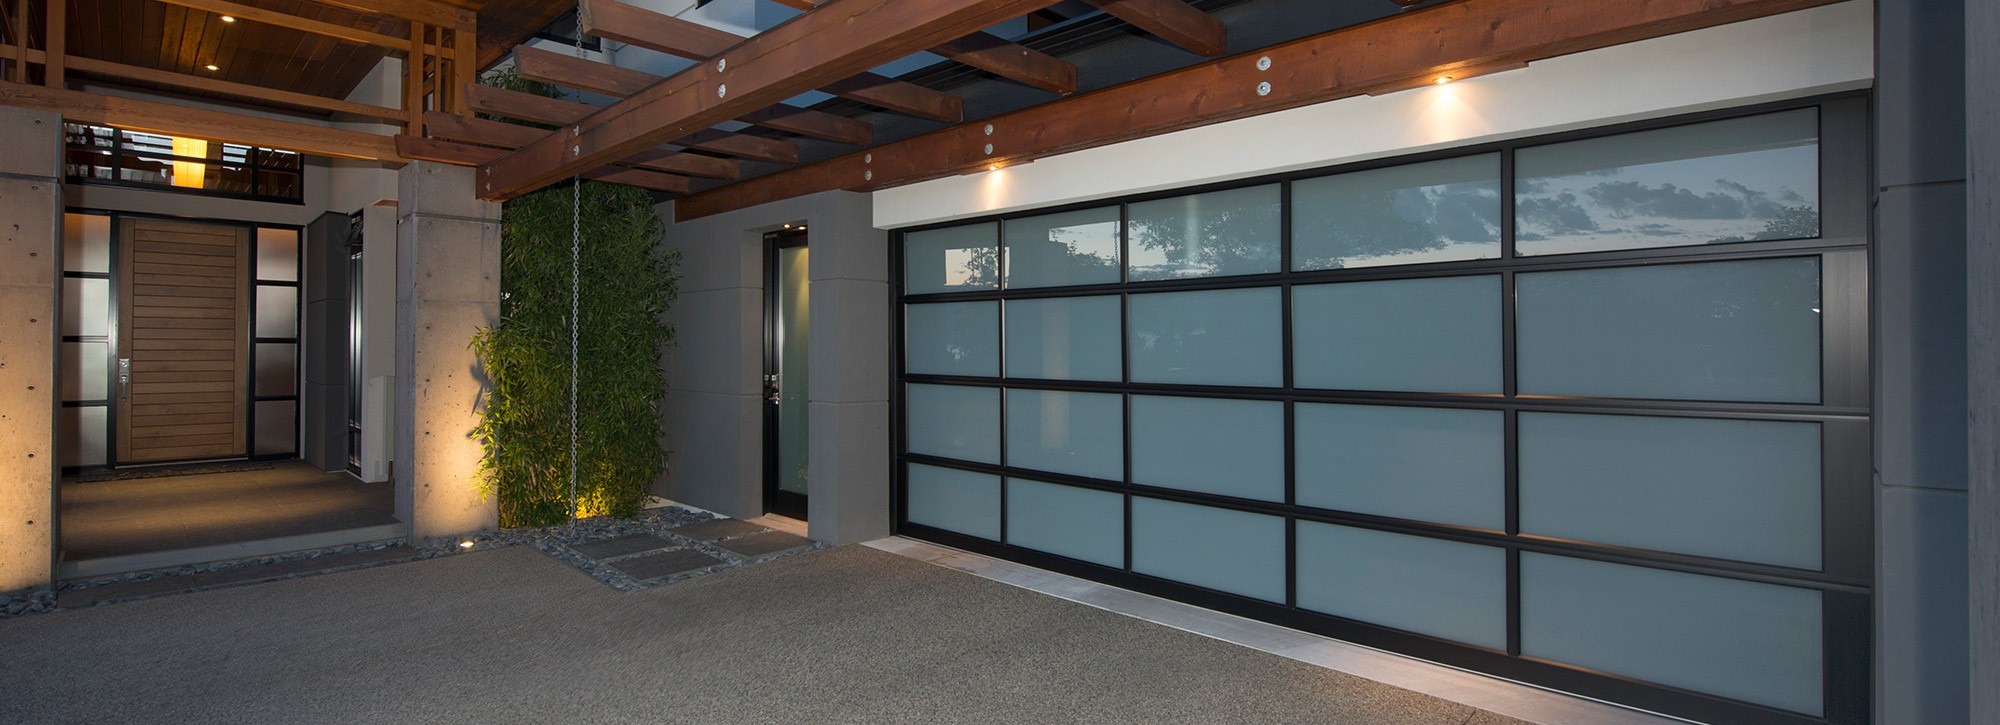  Garage Door Maintenance Vancouver with Modern Design